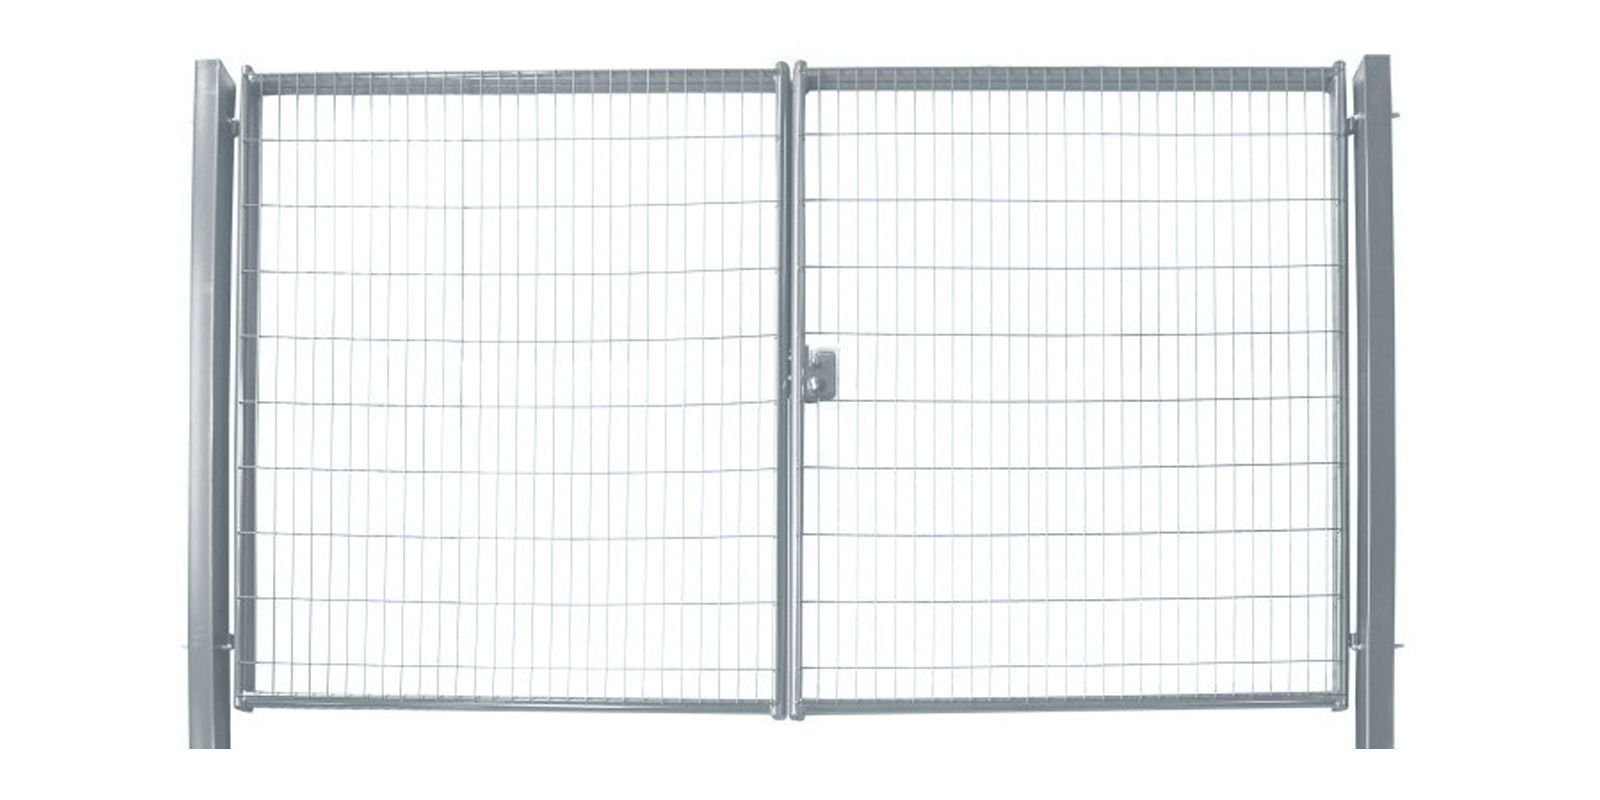 Ворота для панельного ограждения Medium, 2,03 м, ширина 6 м, изображение, фото | Сталь ТД